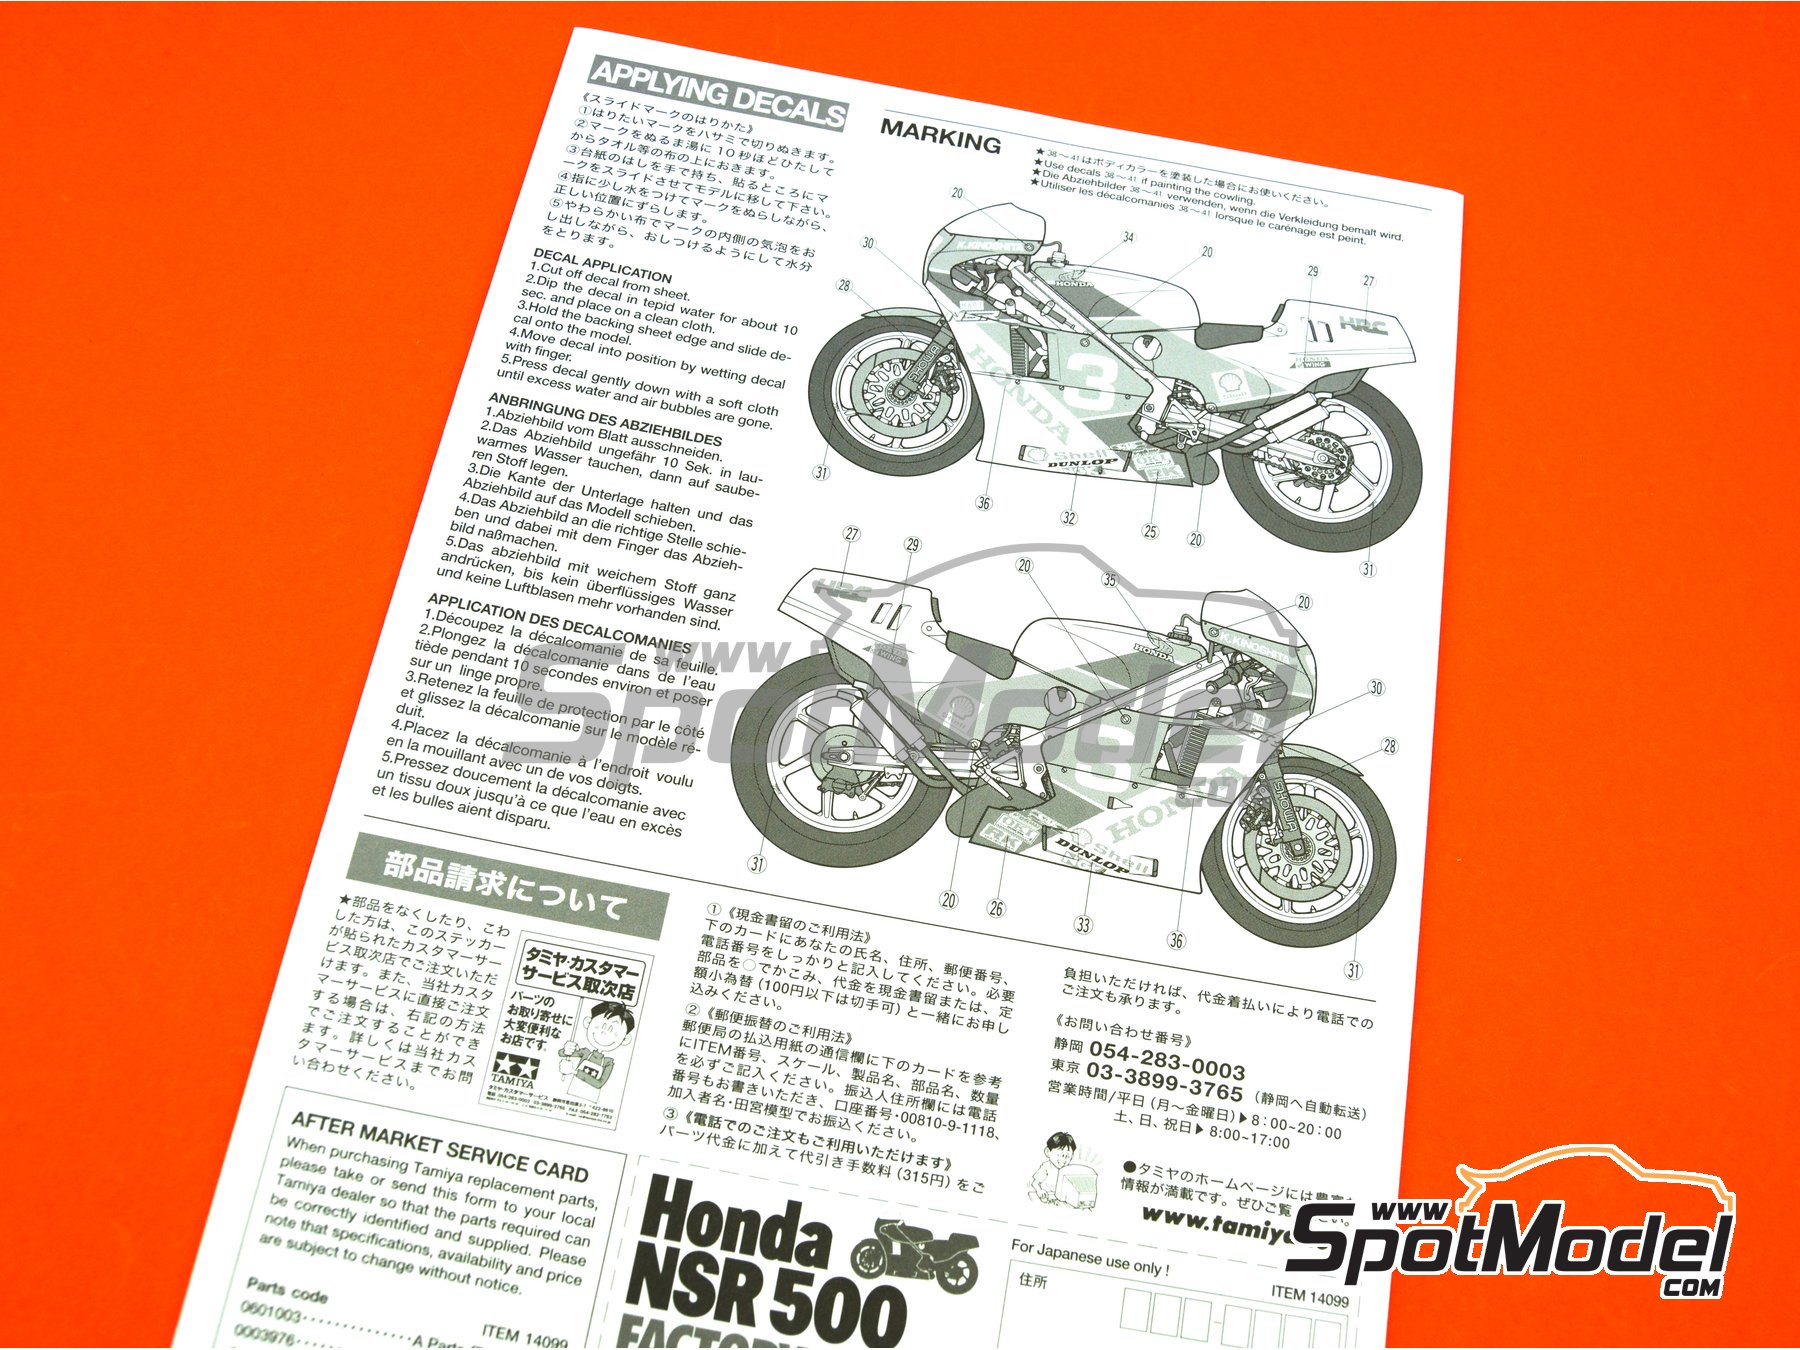 TAMIYA  1/12 Honda NSR500 Factory Color Racing Motorcycle TAM14099 